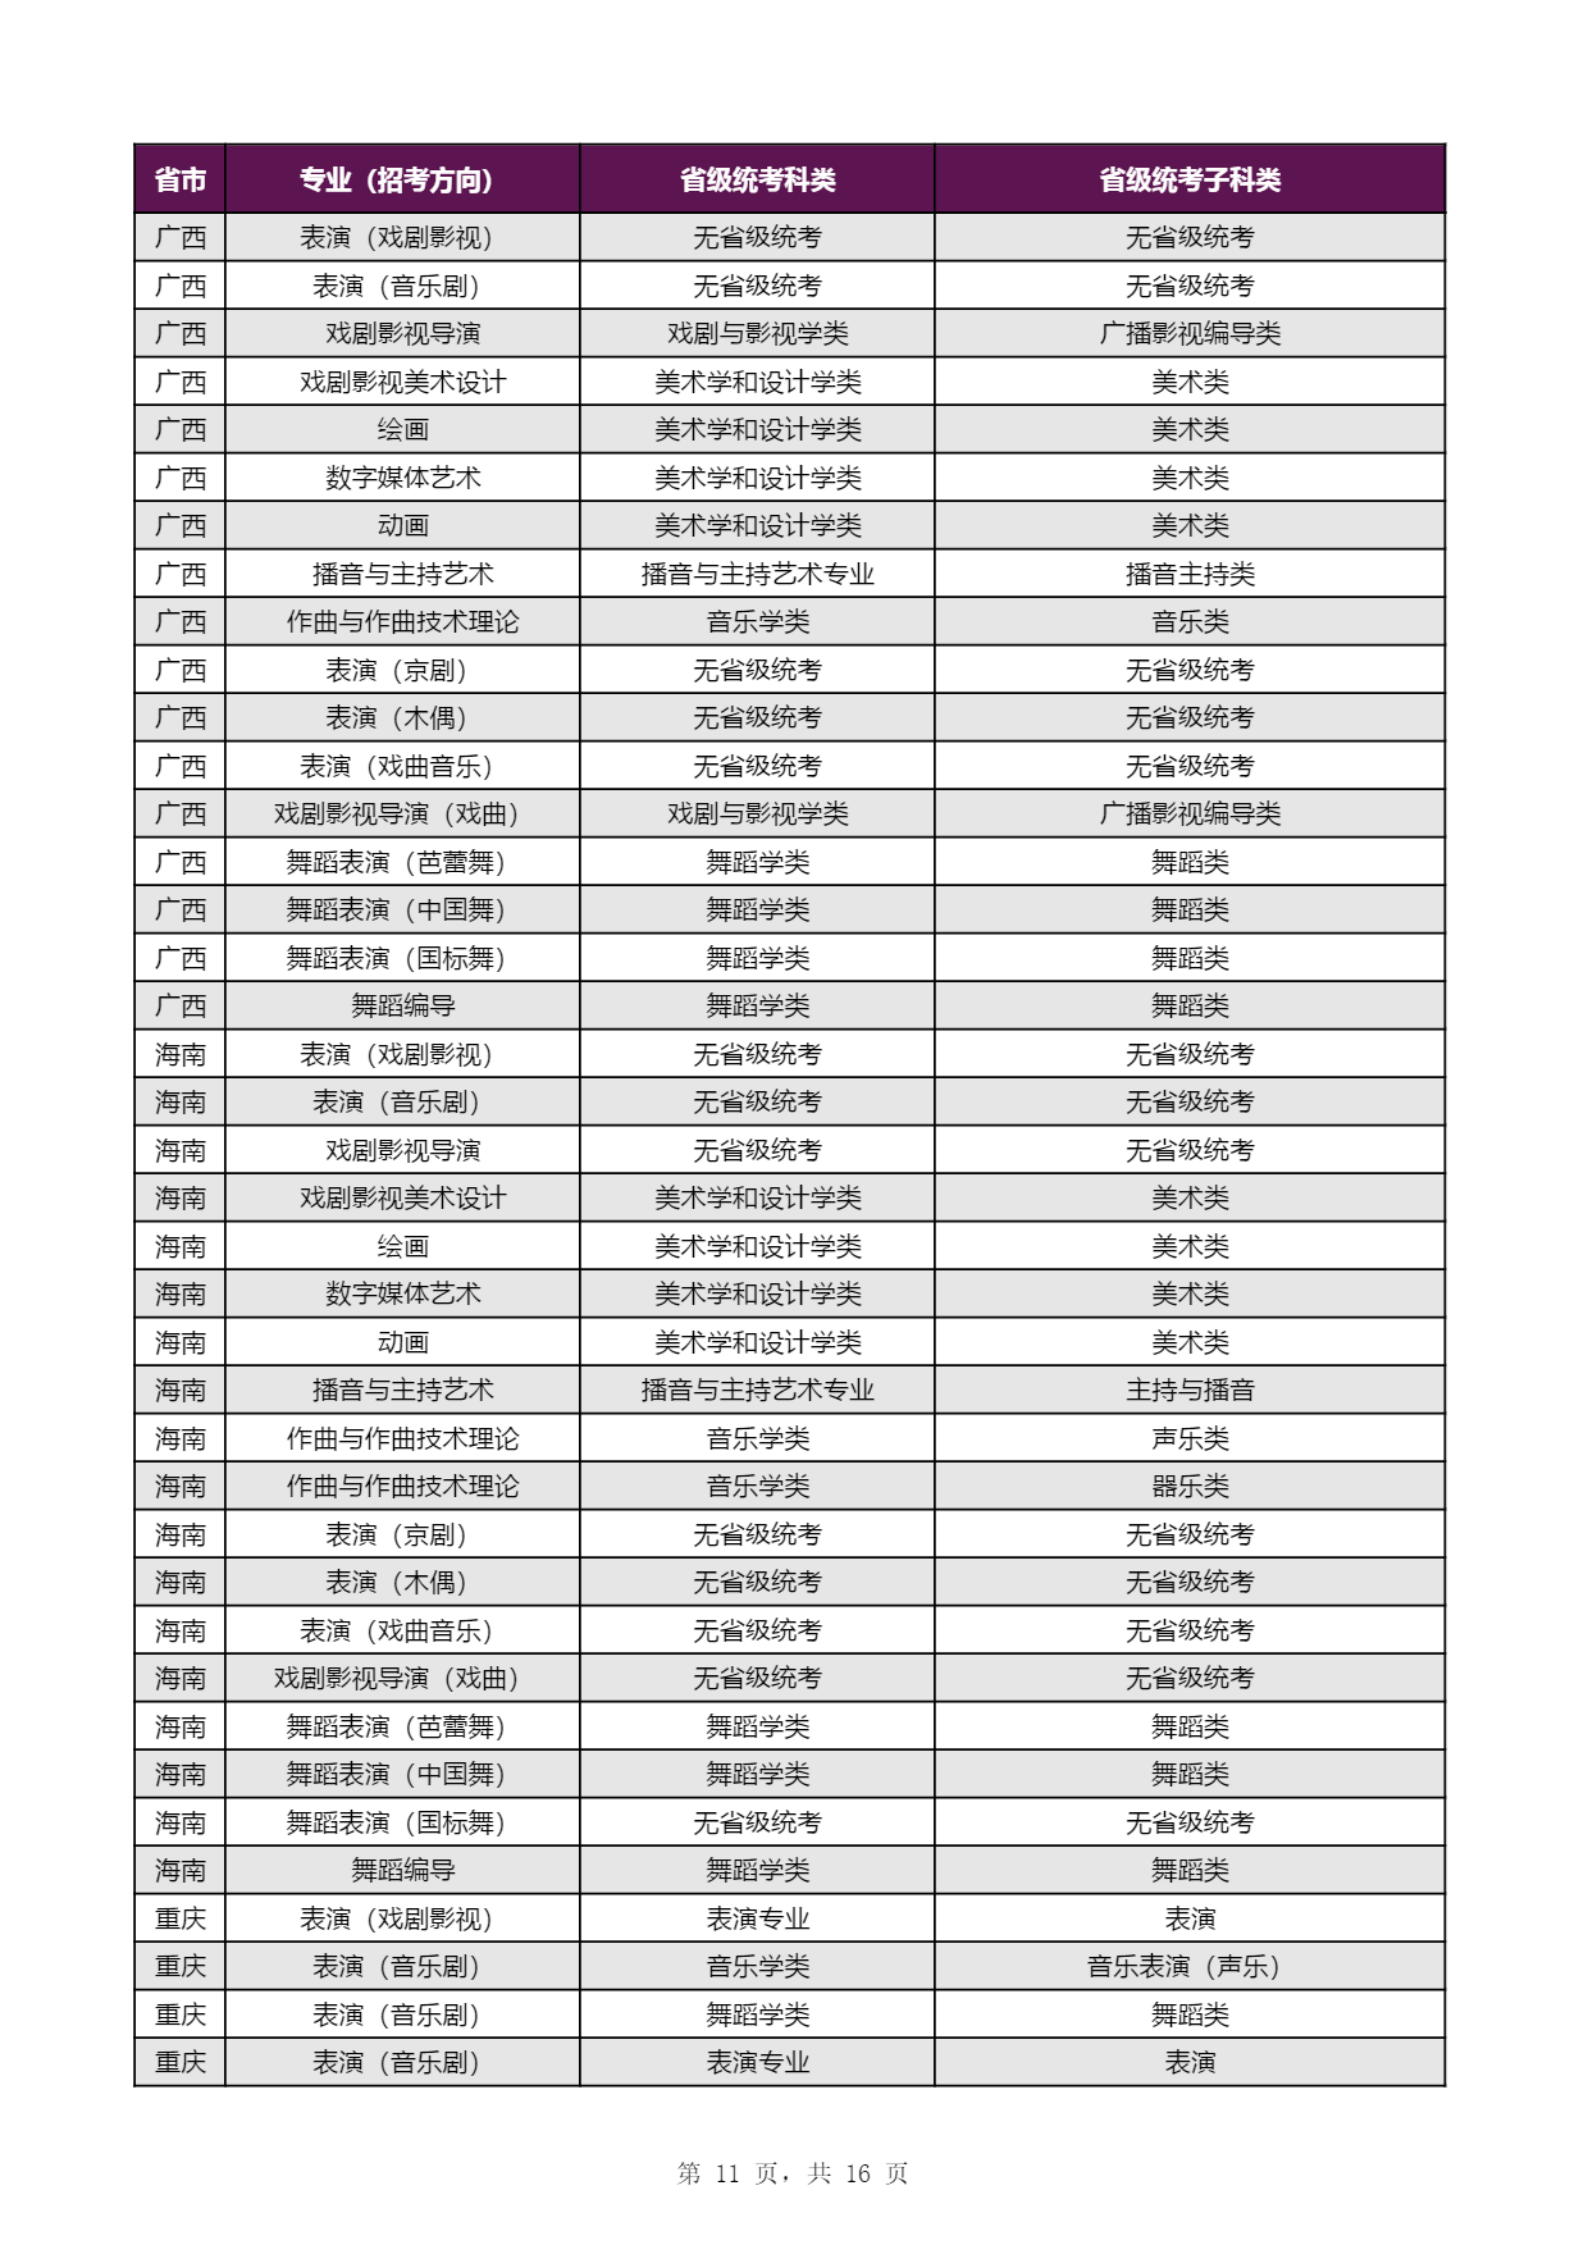 【子科类对应表】上海戏剧学院2023年本科招生专业（招考方向）与各省级统考子科类对应表_10.png